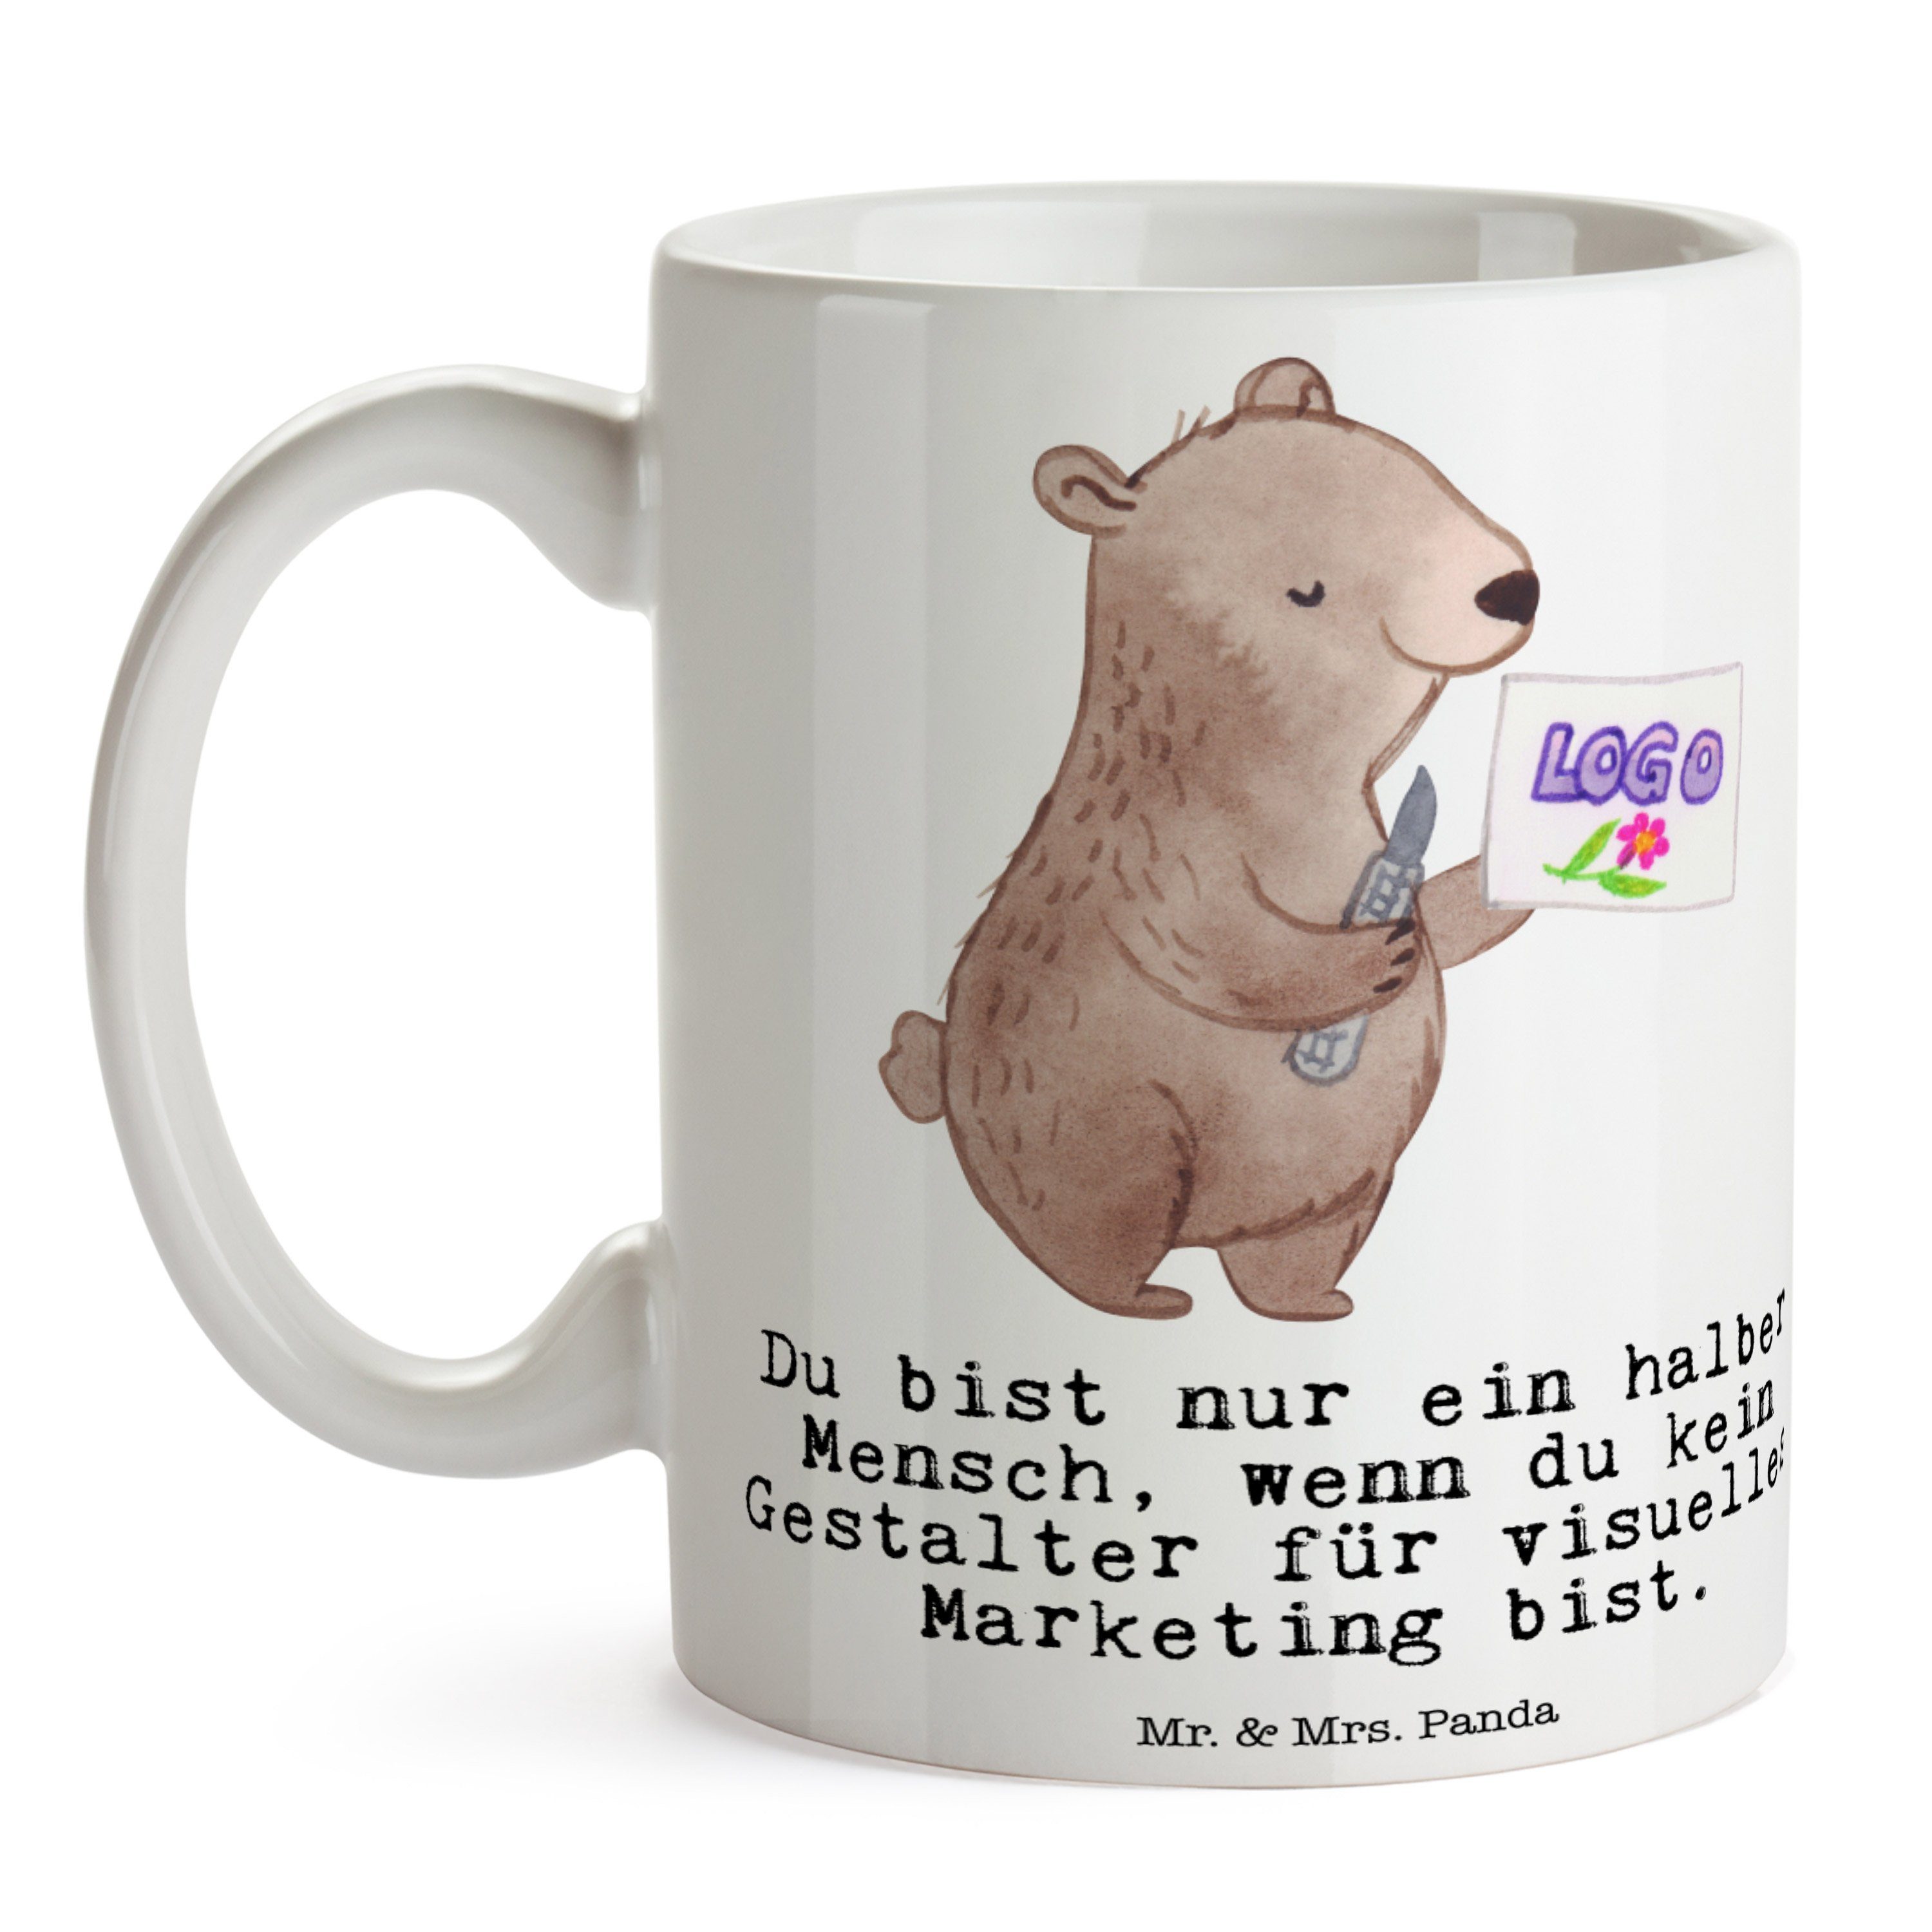 Mr. & Herz Panda Tasse für Marketing Teetass, - visuelles - mit Mrs. Weiß Gestalter Geschenk, Keramik